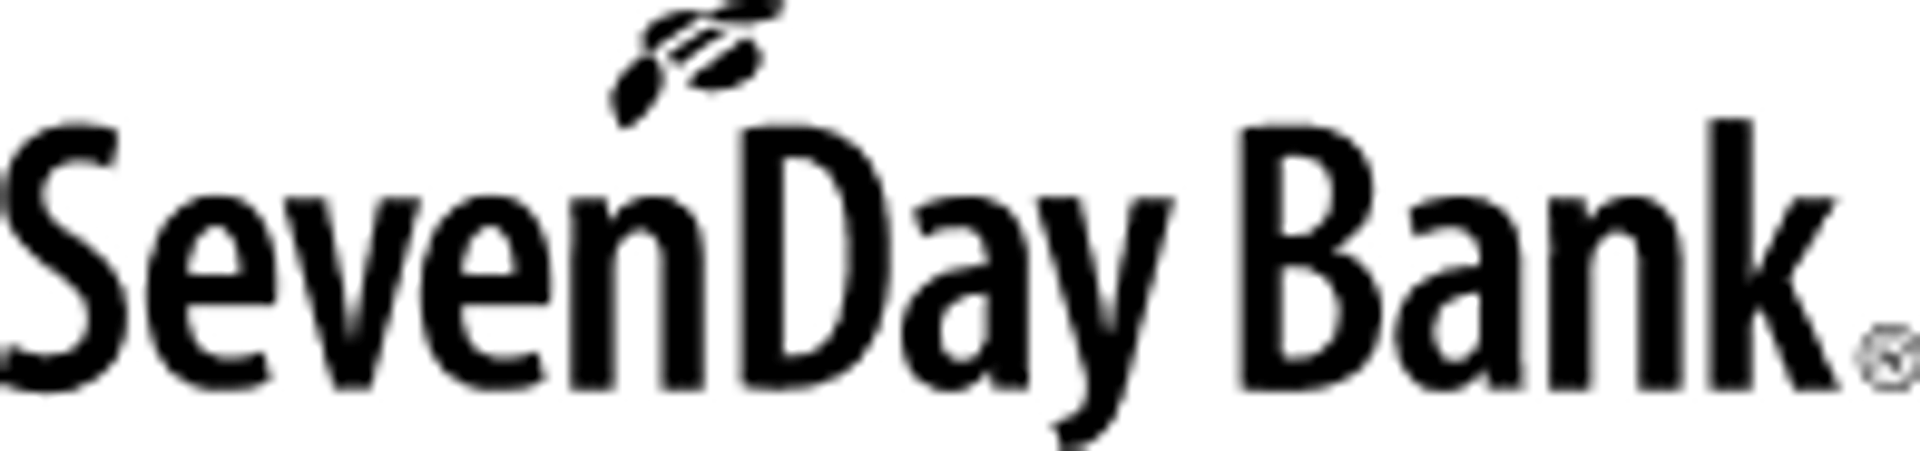 Sevenday bank logga i svart färg